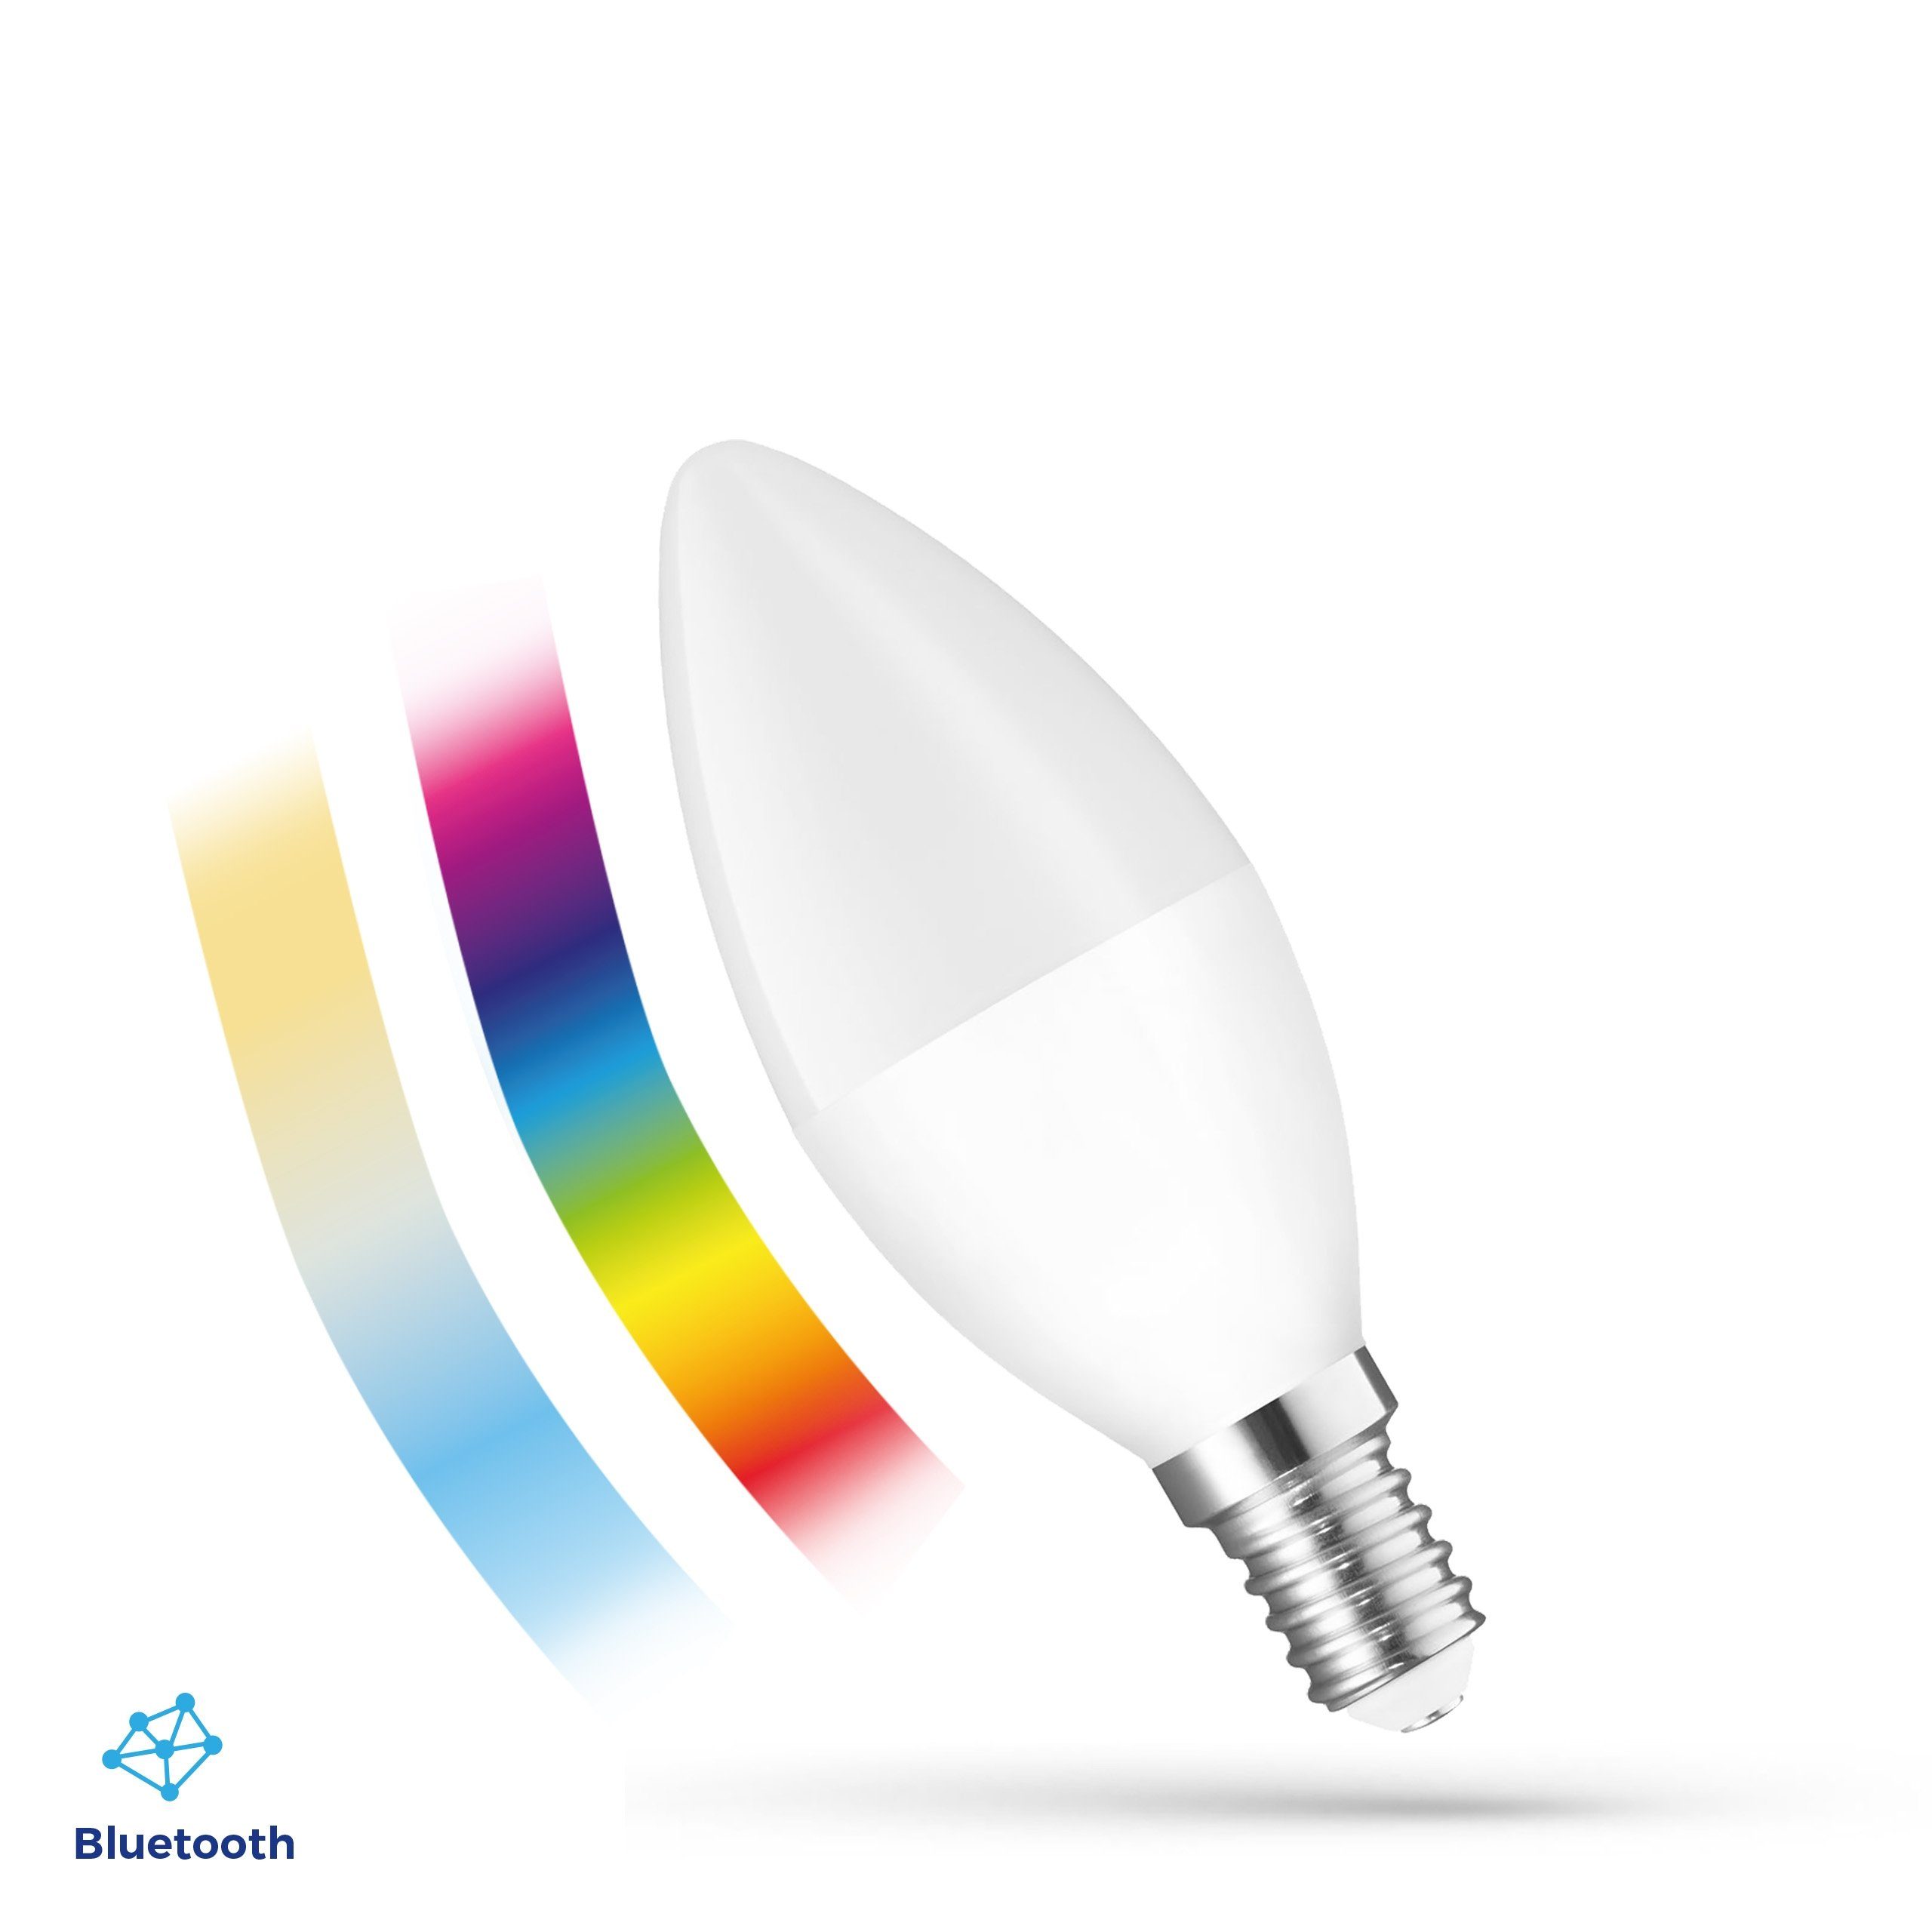 Spectrum SMART LED-Leuchtmittel LED E14 C37 EASY SMART APP 4,9W=42W bunt BLUETOOTH 2700K-6000K DIMMBAR, E14, Farbwechsler, CCT-Farbtemperatursteuerung - warmweiß bis tageslichtweiß, RGB